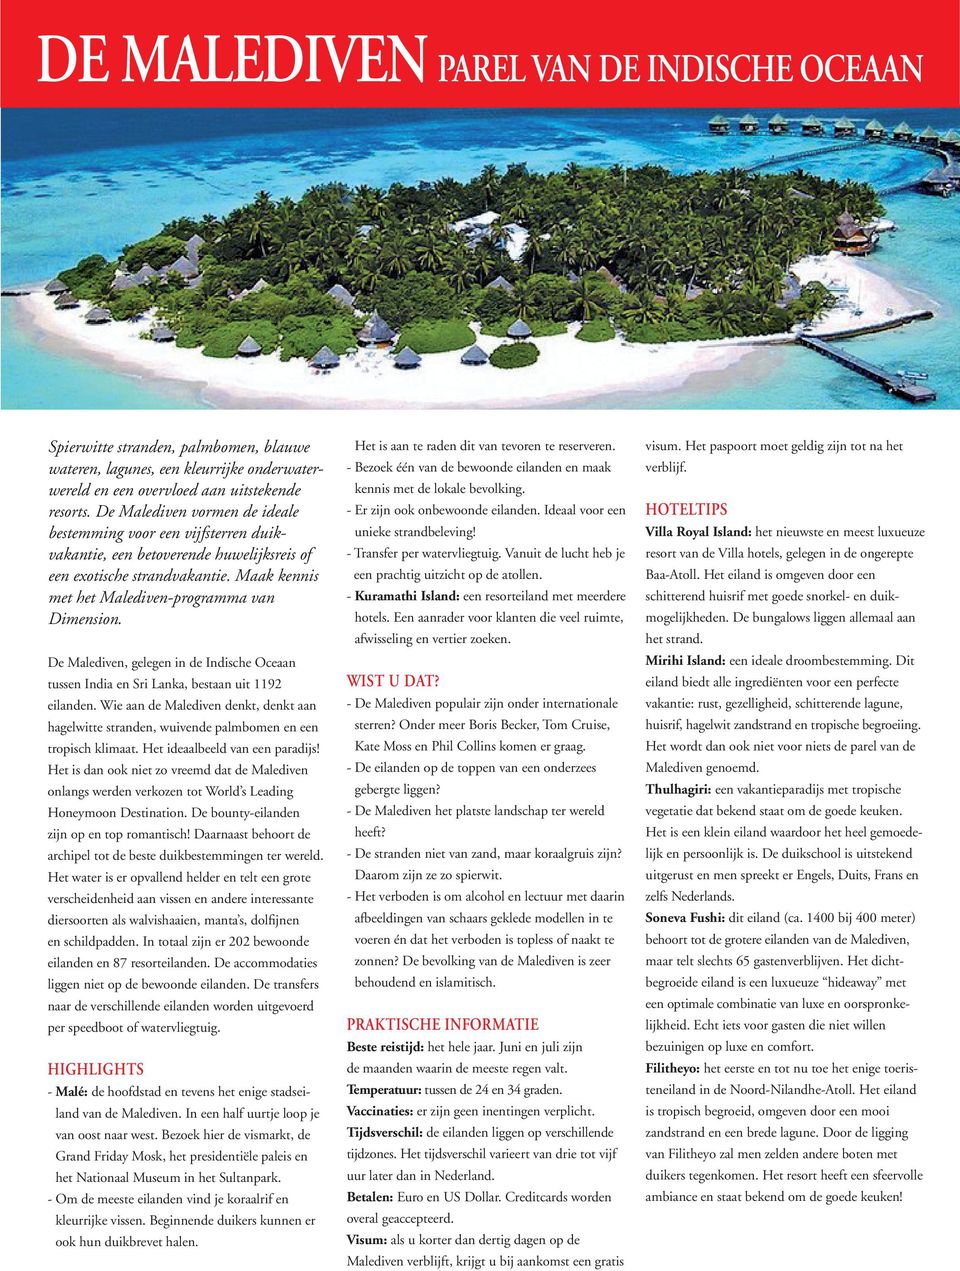 De Malediven, gelegen in de Indische Oceaan tussen India en Sri Lanka, bestaan uit 1192 eilanden. Wie aan de Malediven denkt, denkt aan hagelwitte stranden, wuivende palmbomen en een tropisch klimaat.